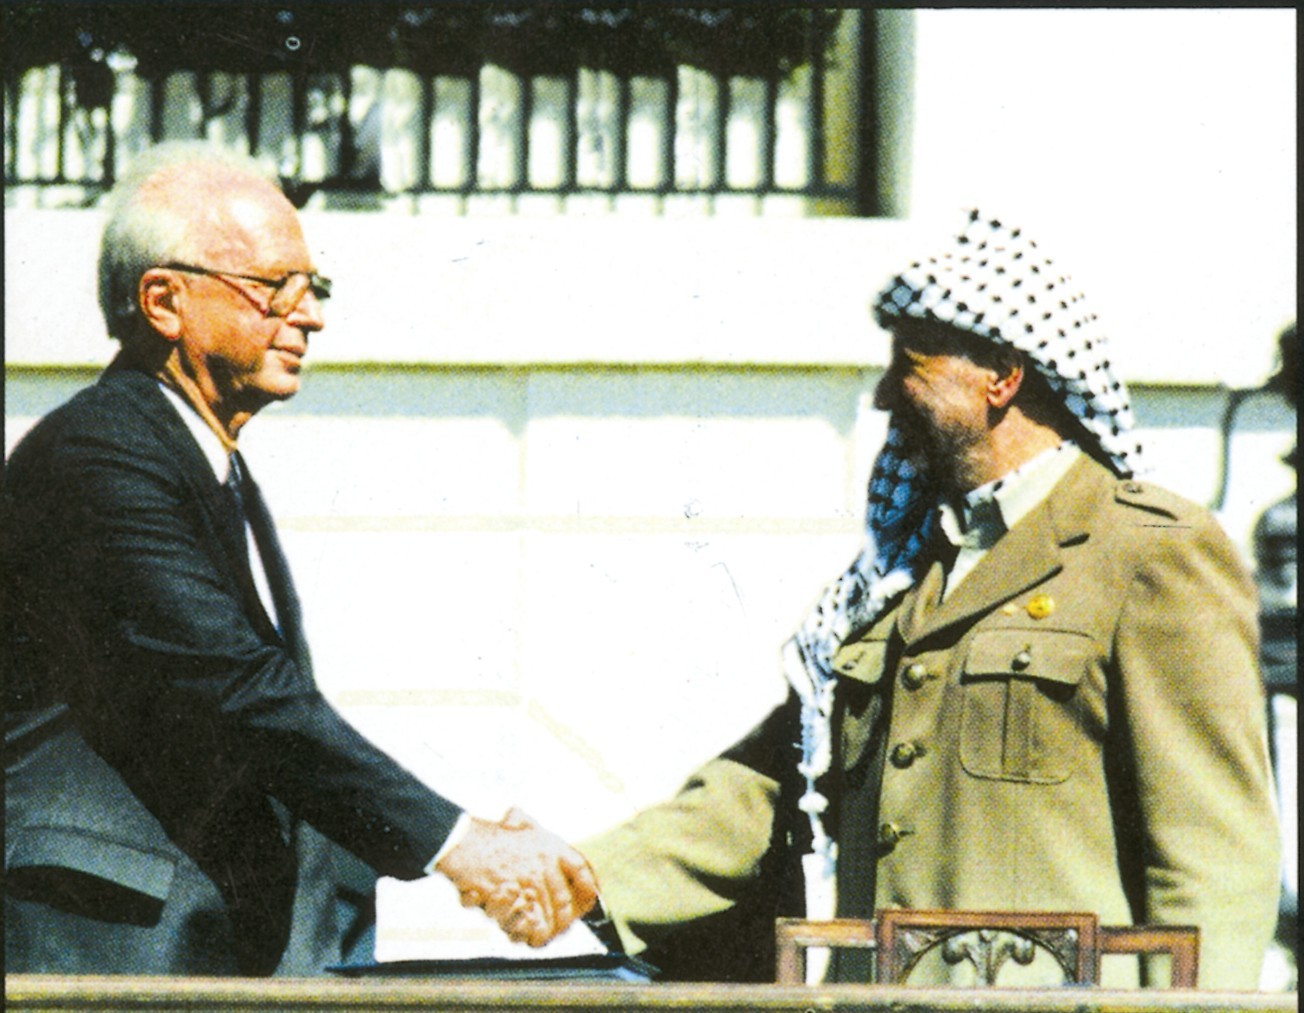 Rabin incontra Arafat